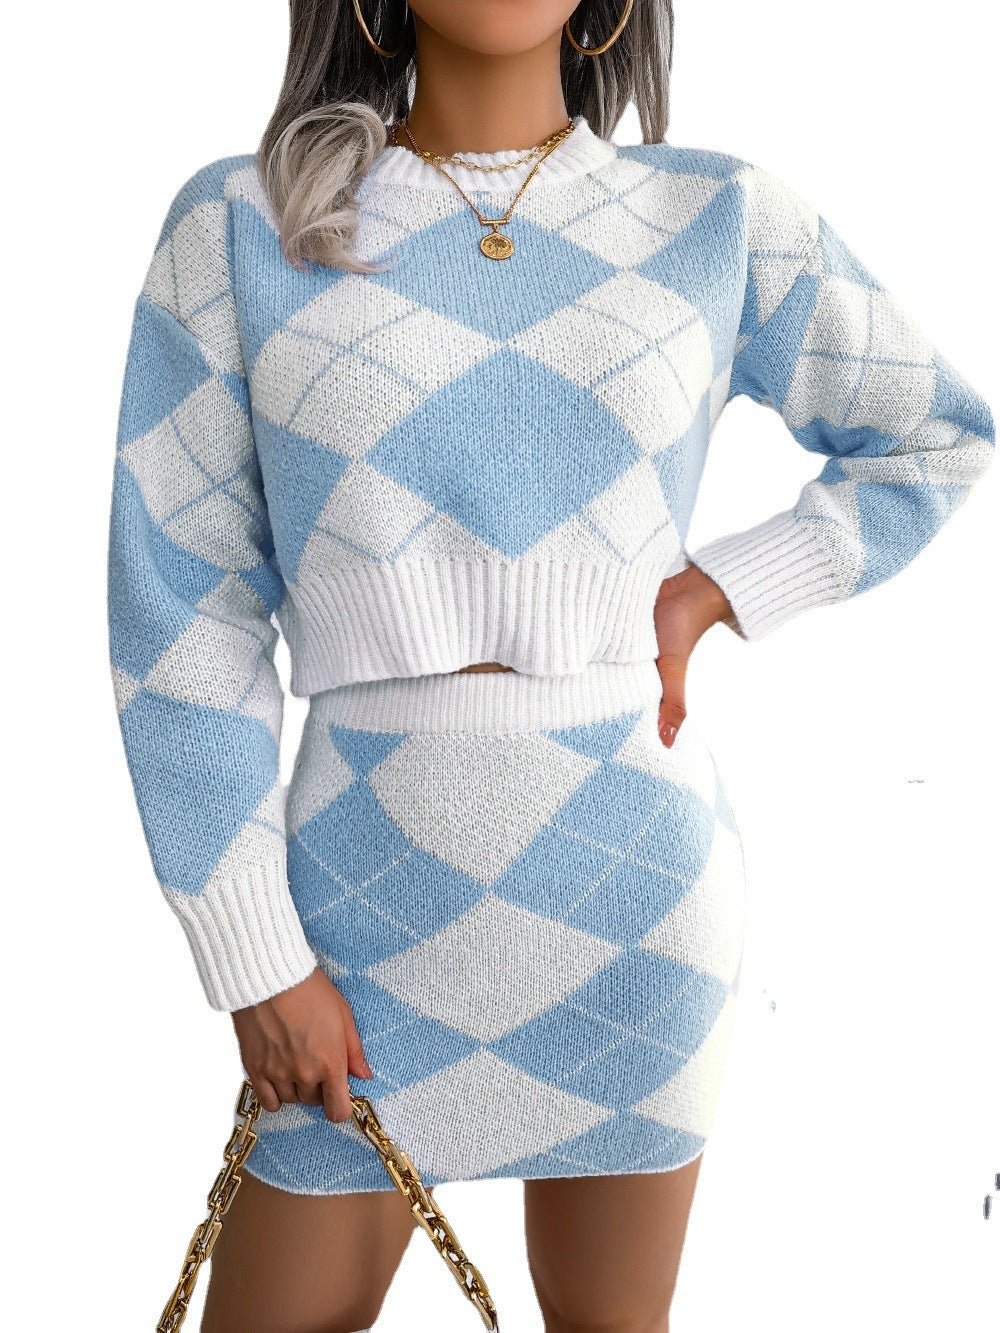 Nextthink Sweater Hip Skirt Casual Suit - NextthinkShop0CJLS201049303CX0